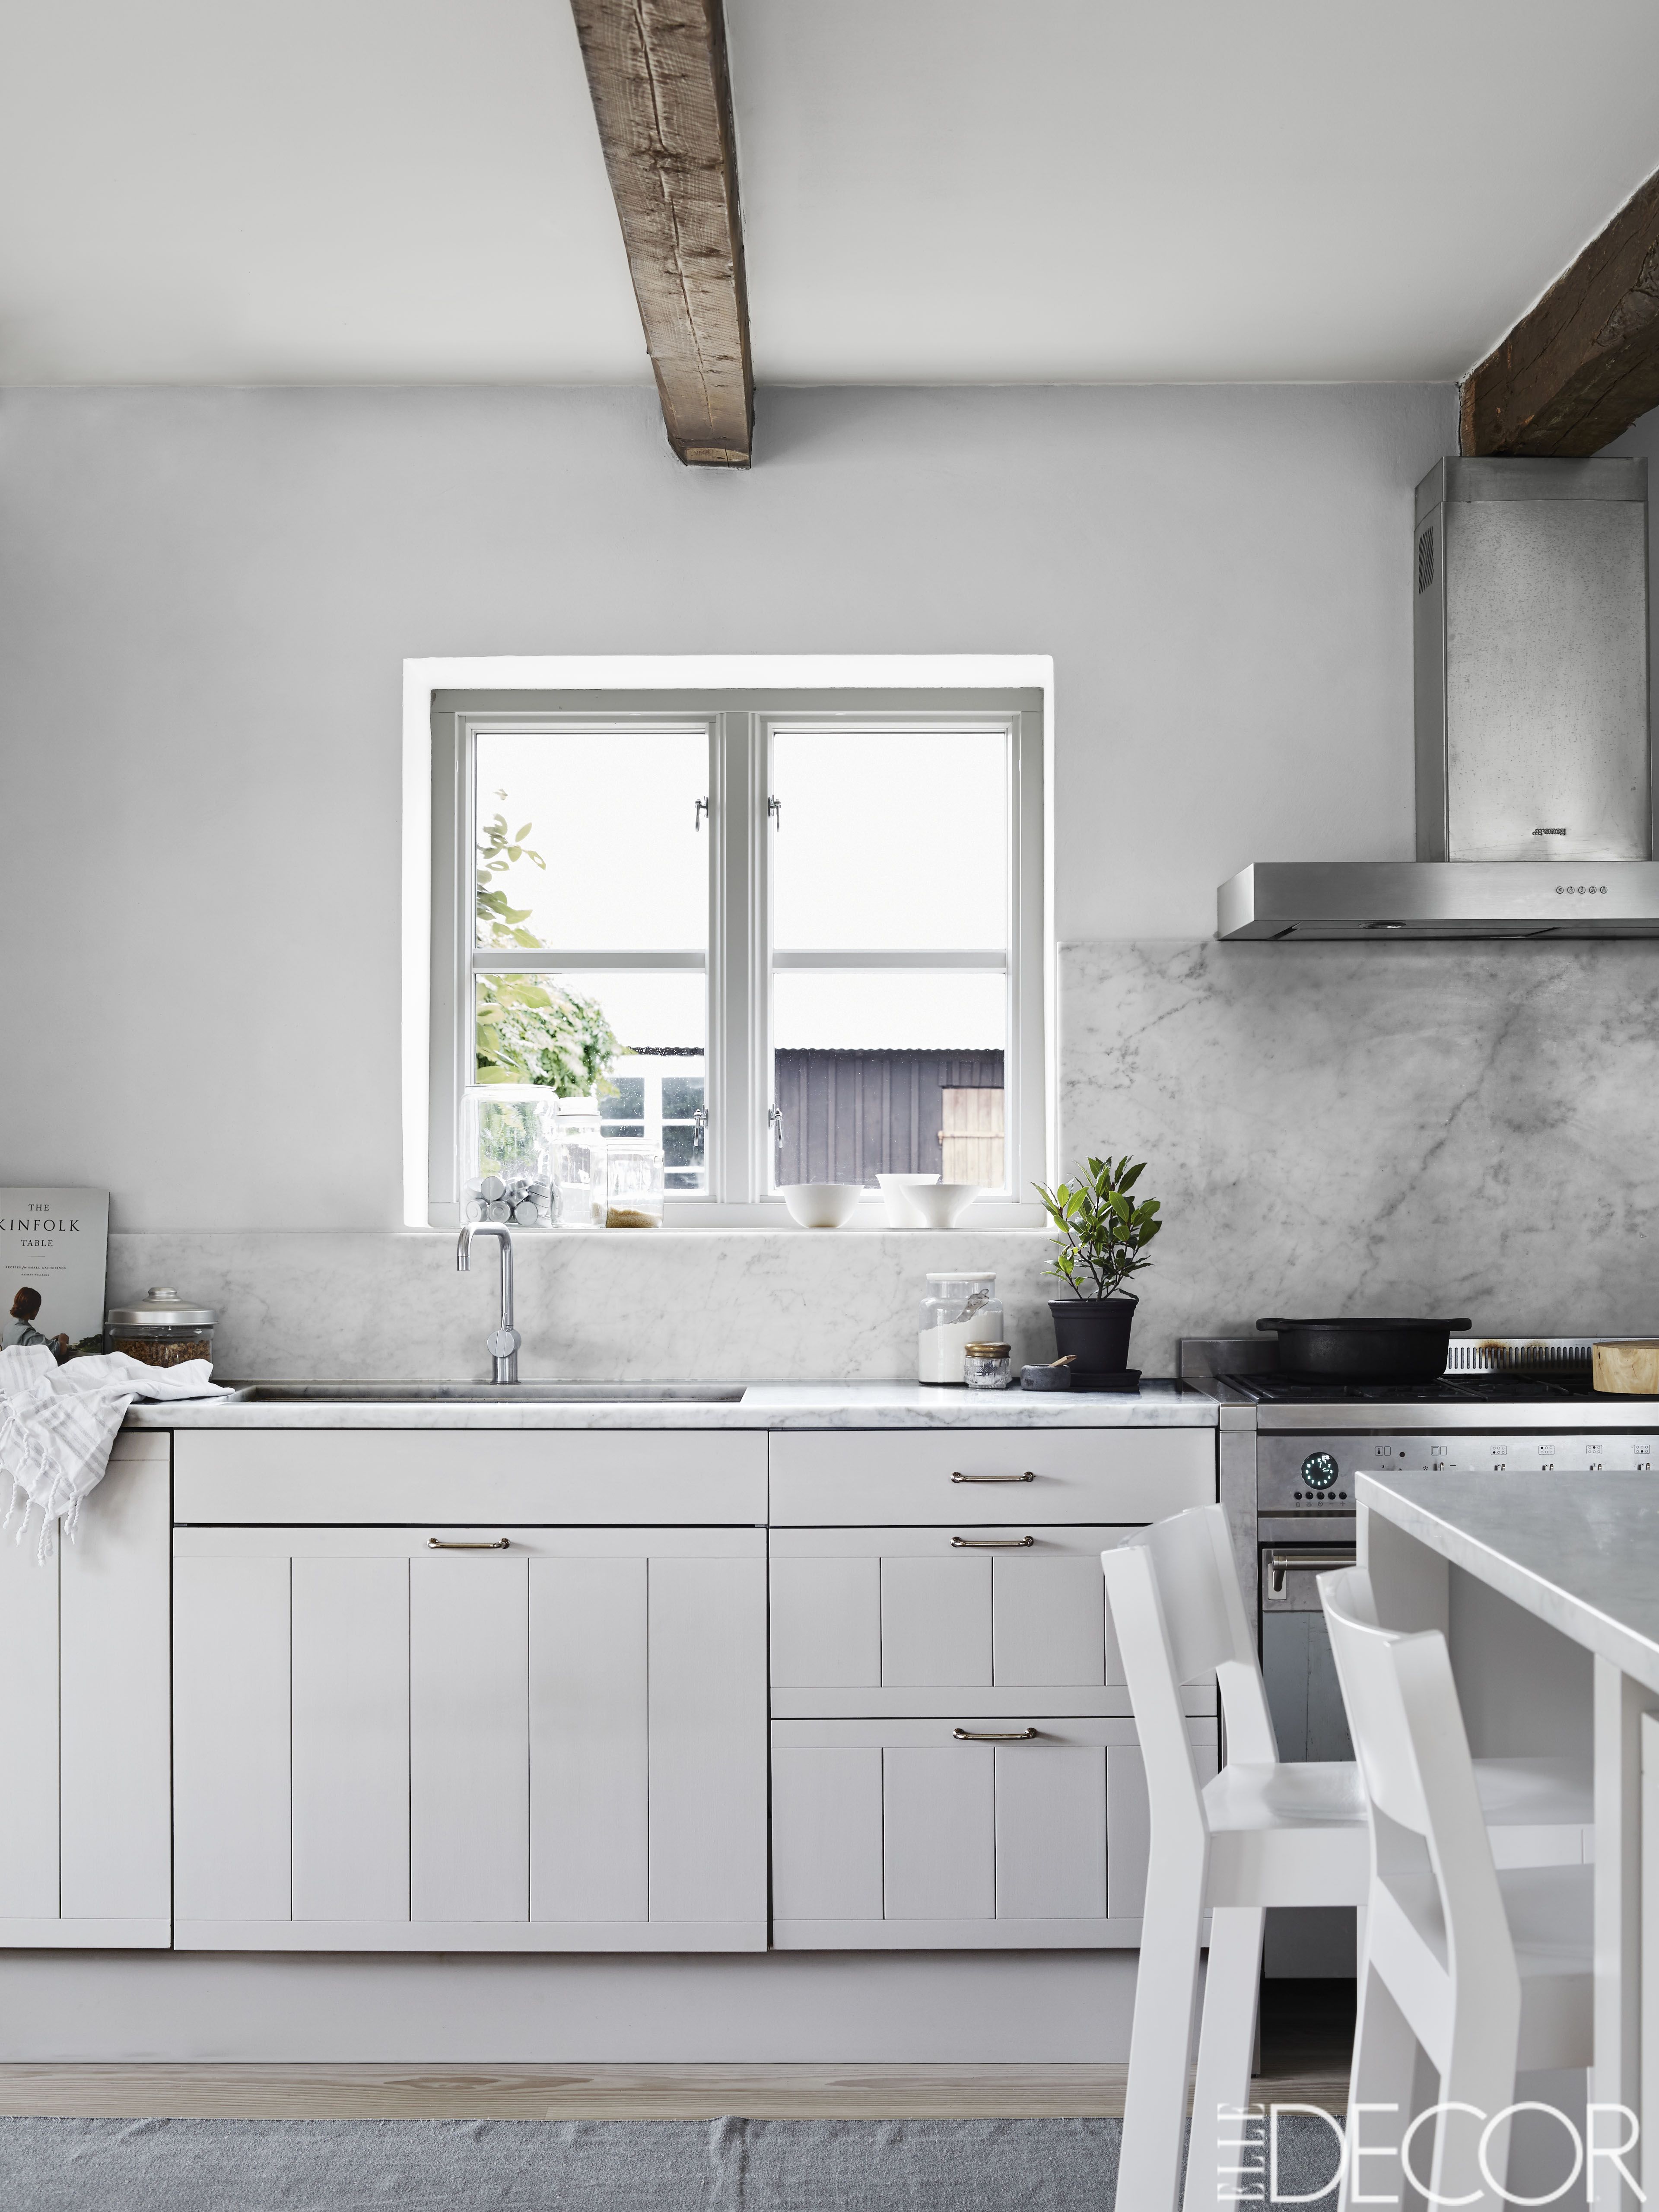 20 Best Kitchen Decor Ideas   Beautiful Kitchen Pictures